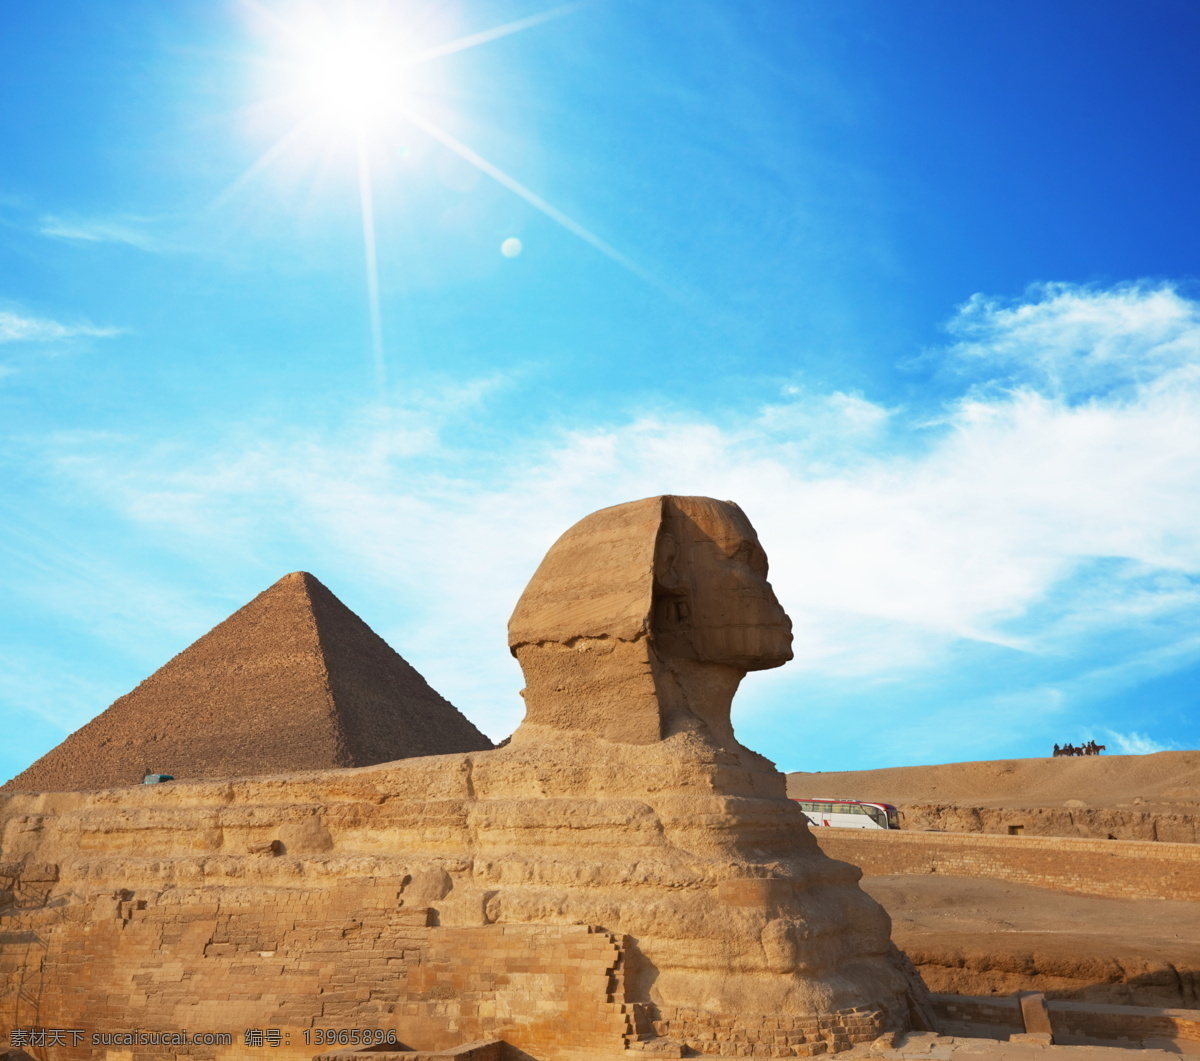 埃及金字塔 埃及 非洲 旅游 旅游摄影 国外 国外旅游 金字塔 古埃及 狮身人面 狮身人面像 法老 陵墓 景点 石头 风景 名胜古迹 自然景观 青色 天蓝色